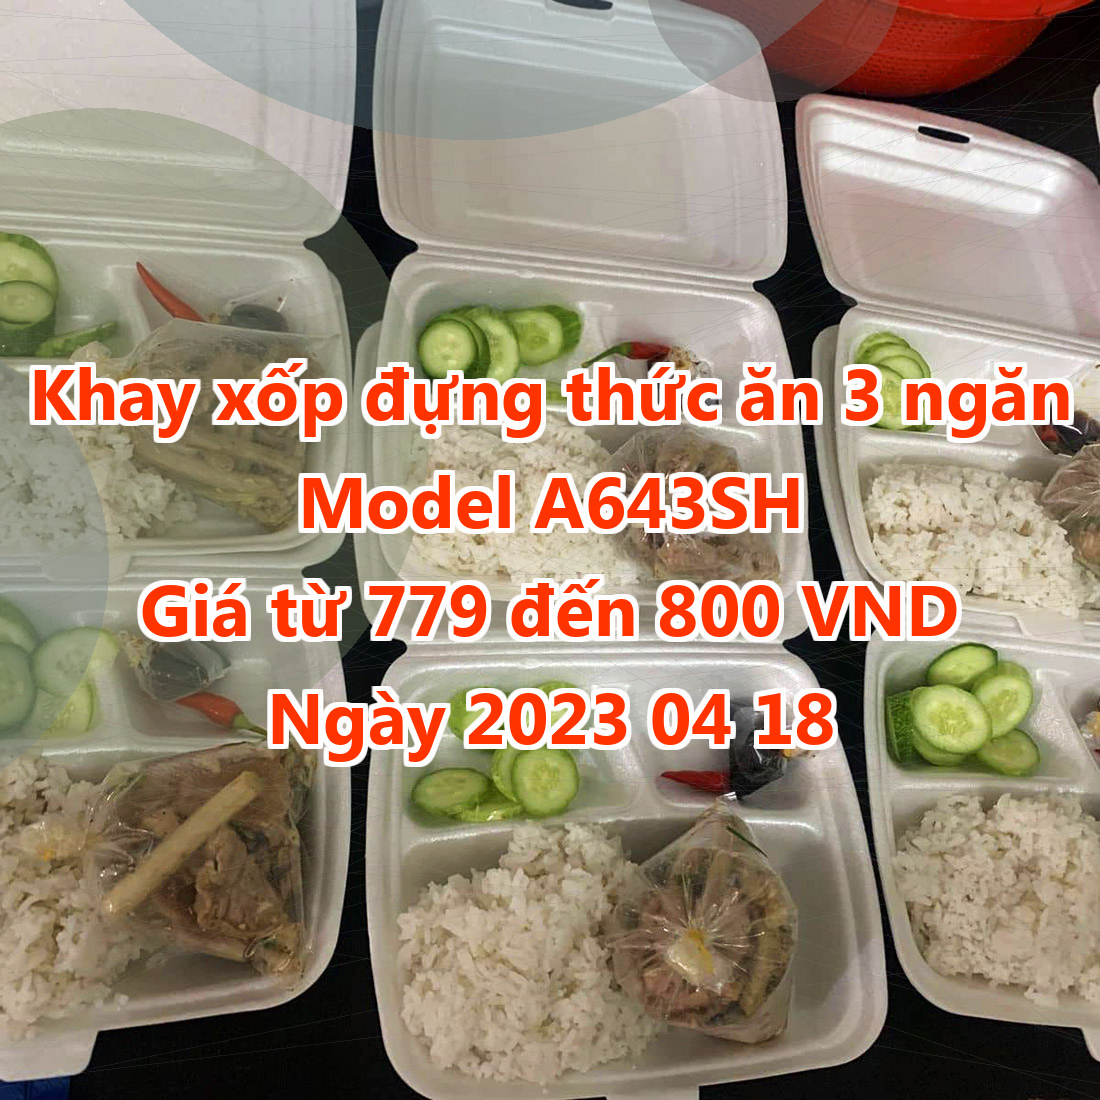 Khay xốp đựng thức ăn 3 ngăn - Model A643SH - Màu Cyan